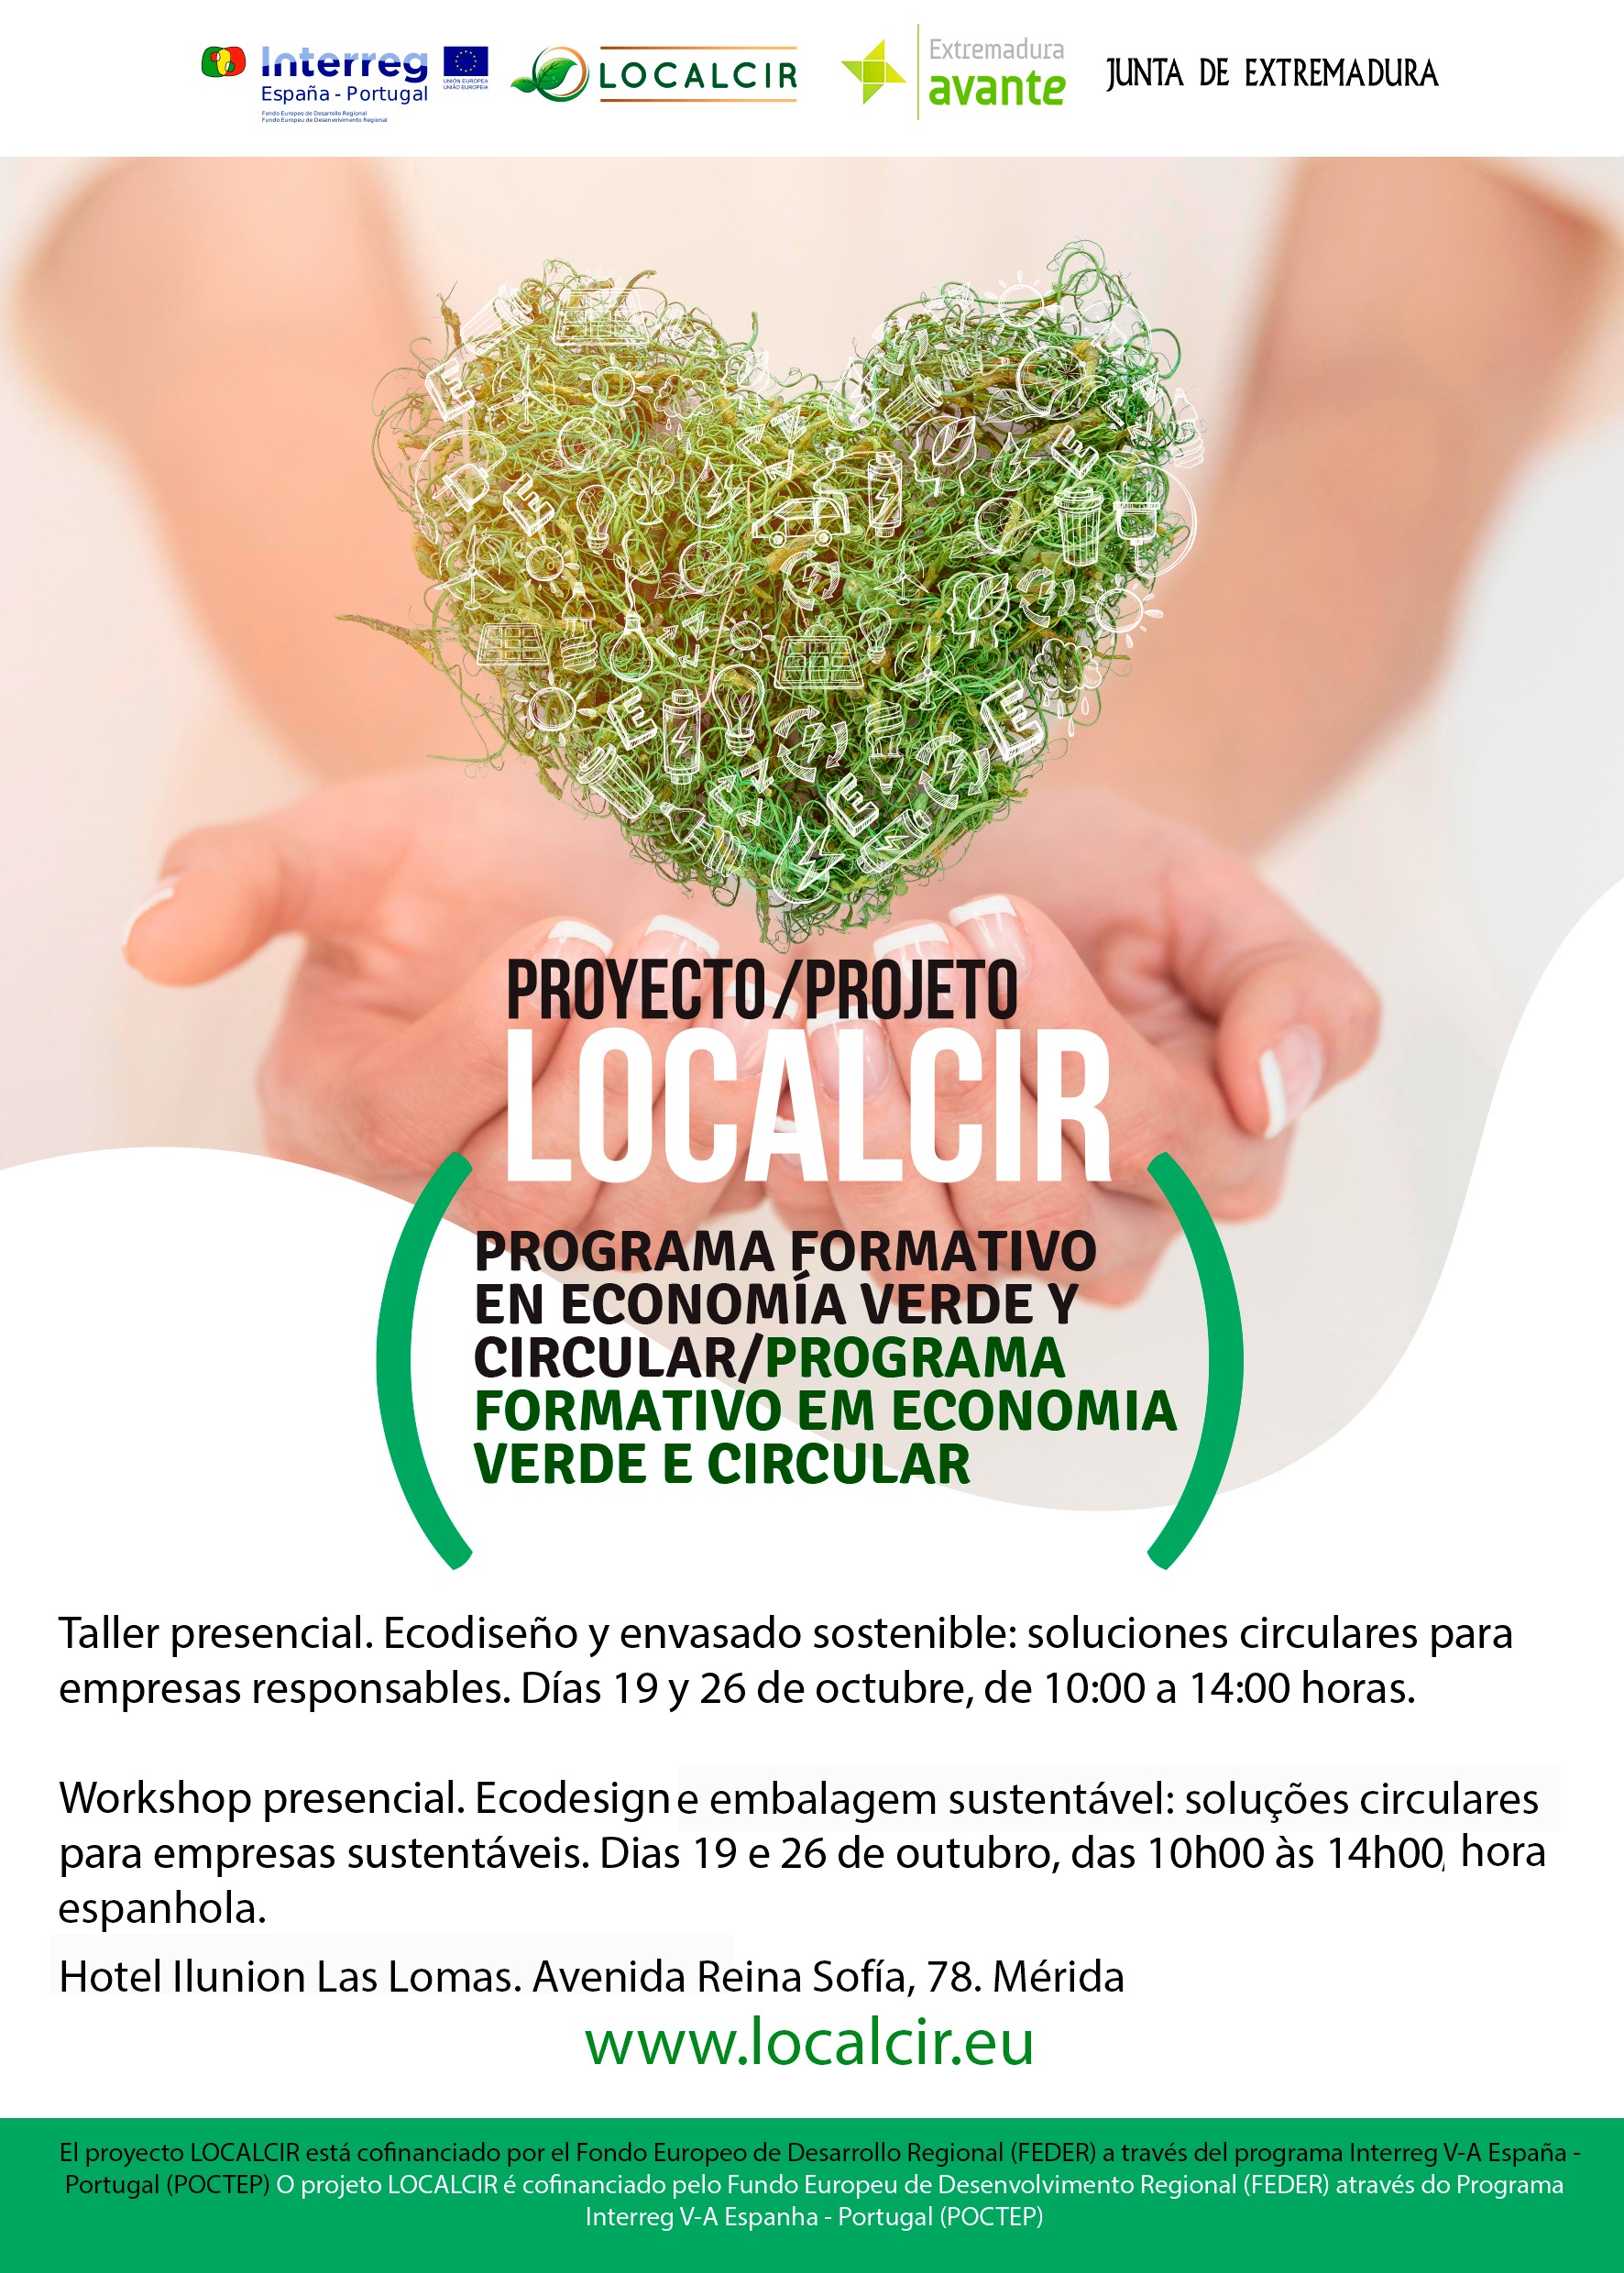 Taller "Ecodiseño y envasado sostenible: soluciones circulares para empresas responsables". Proyecto LOCALCIR